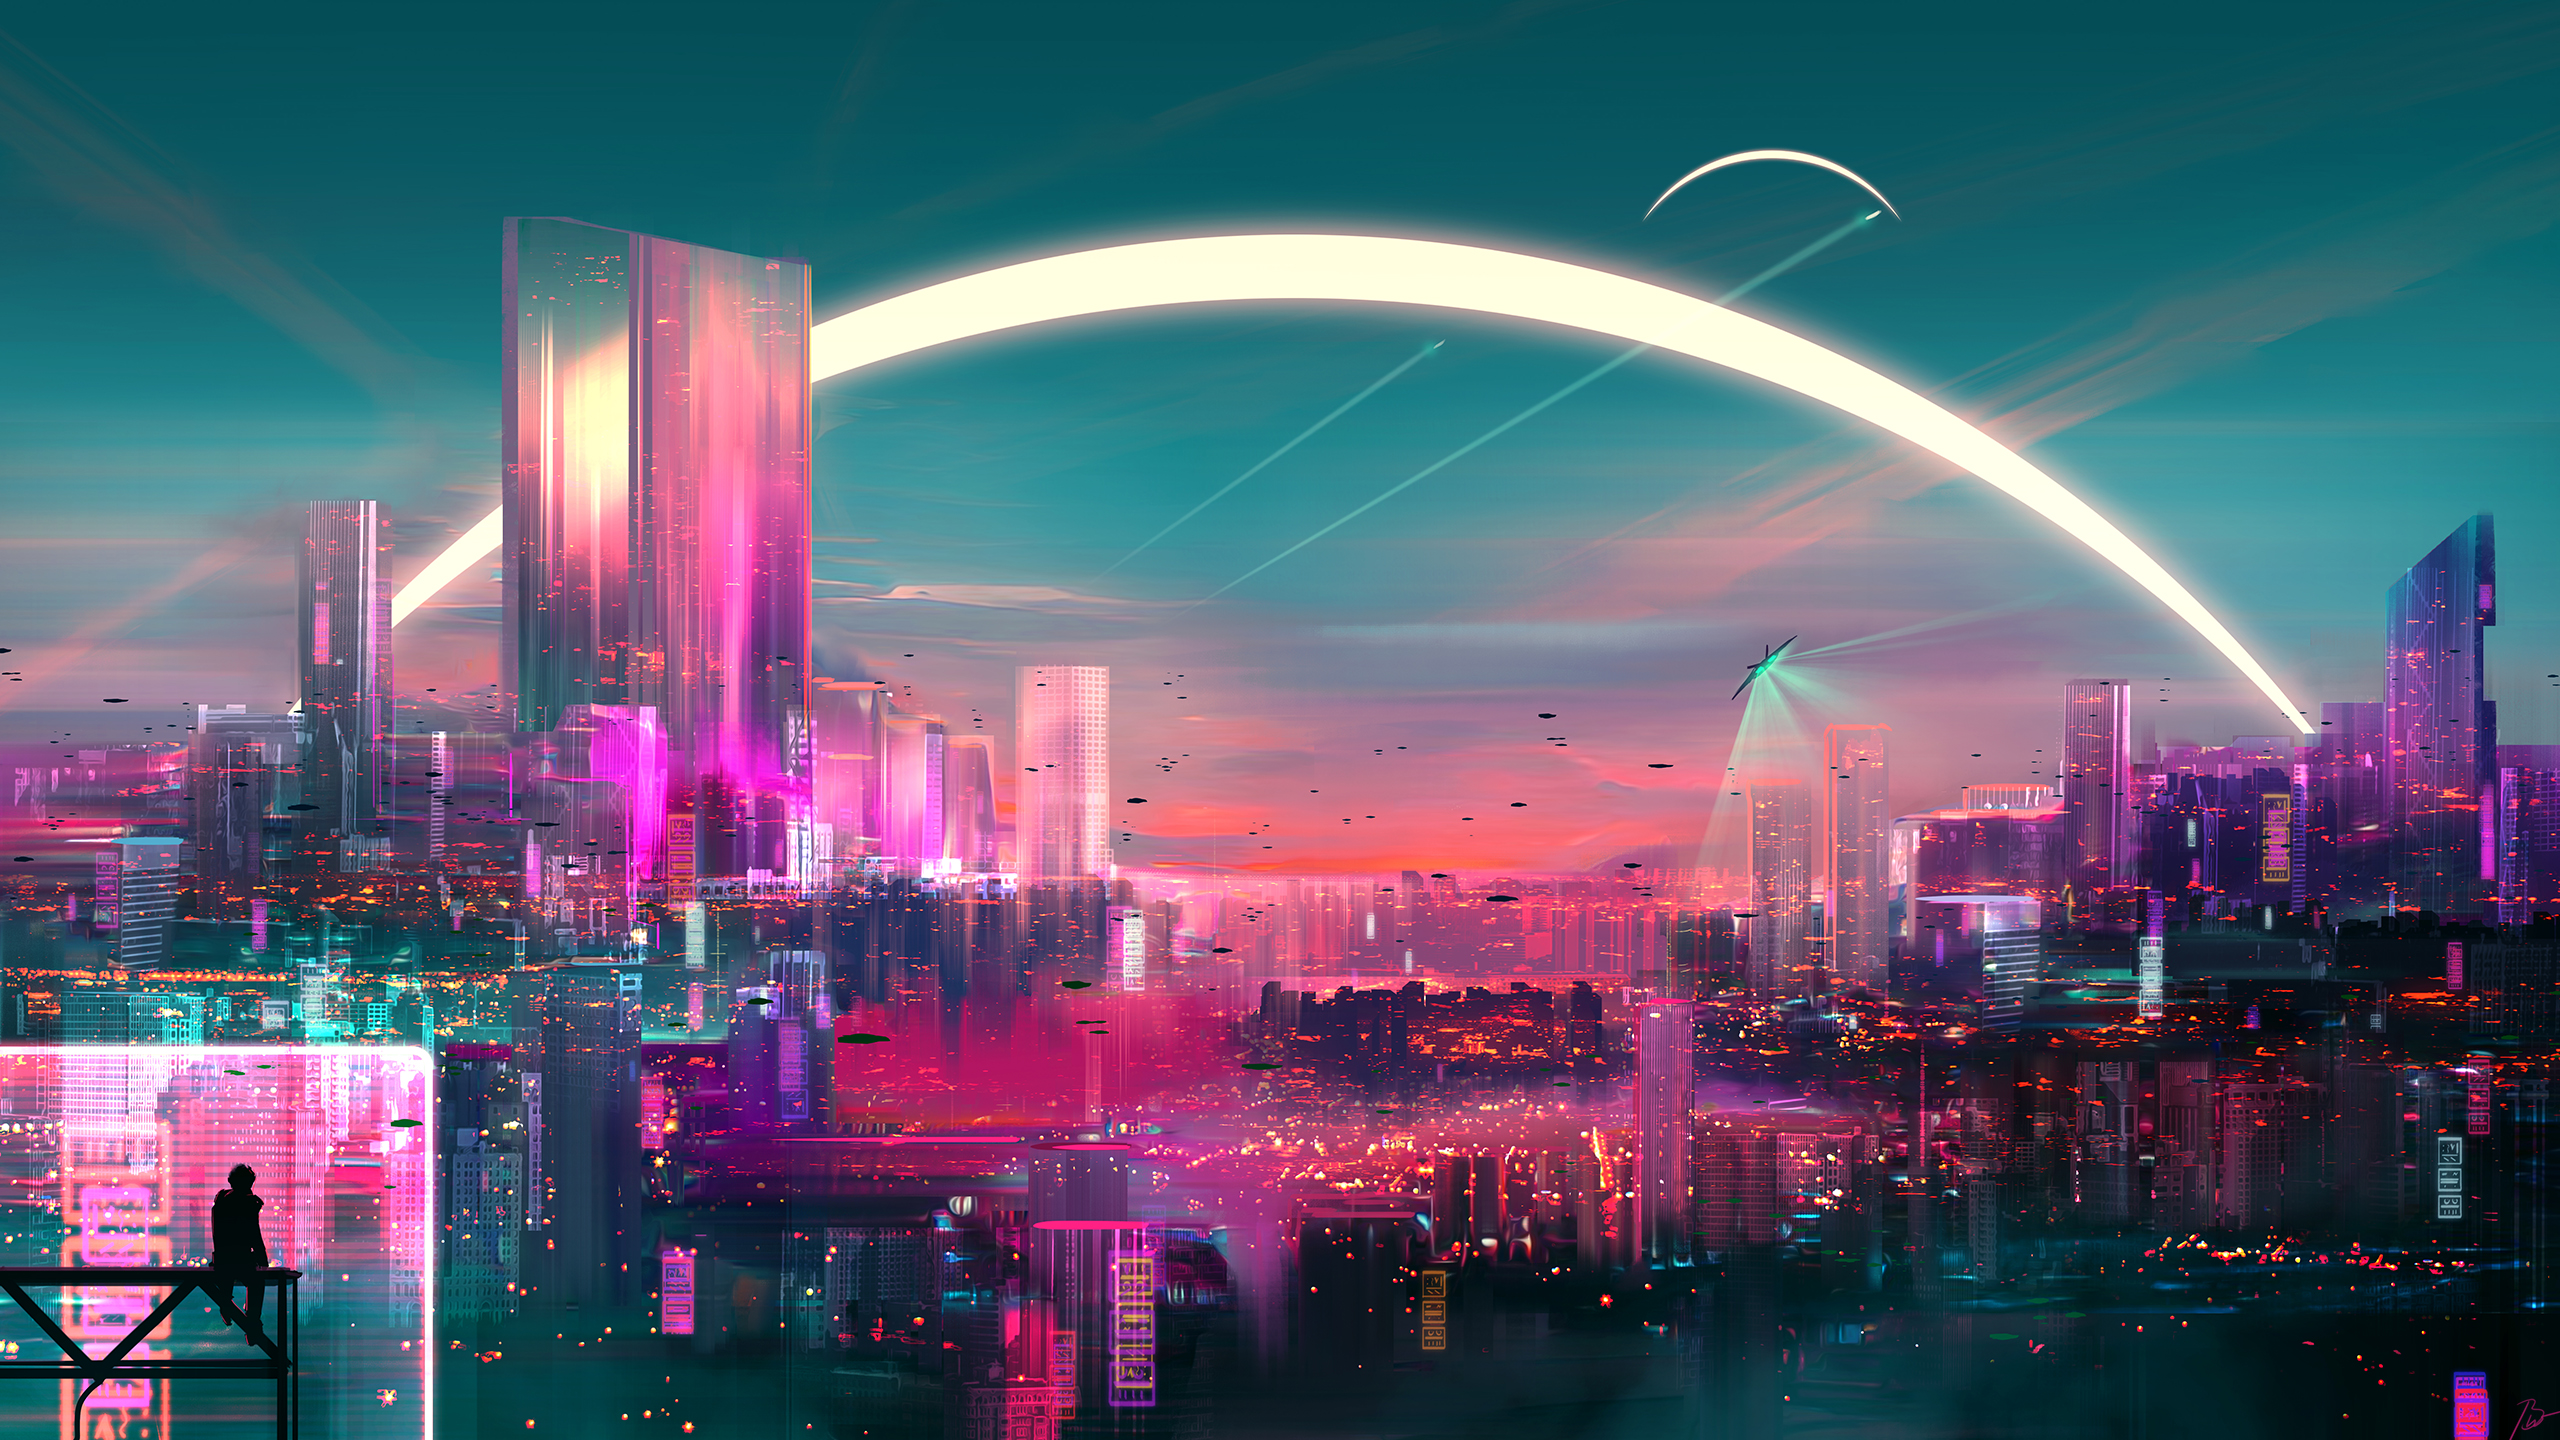 JoeyJazz Cityscape Science Fiction Fantasy Art Futuristic City 2560x1440